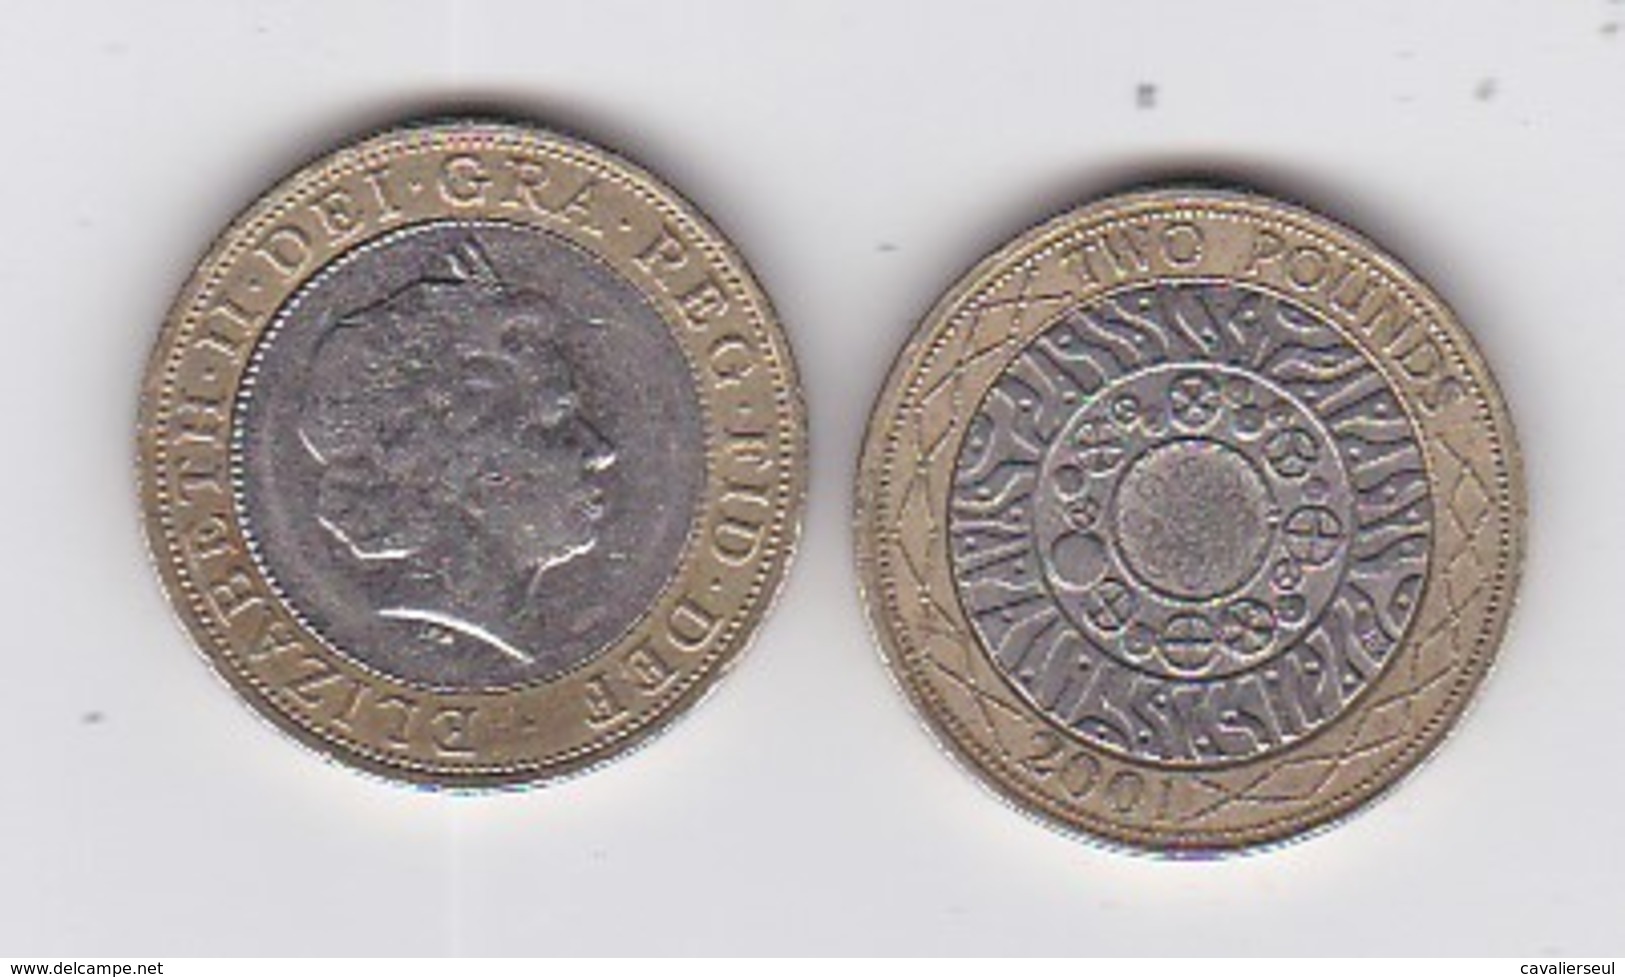 2 PIECES De 2 POUNDS - 2001 & 2010 - 1 Pound